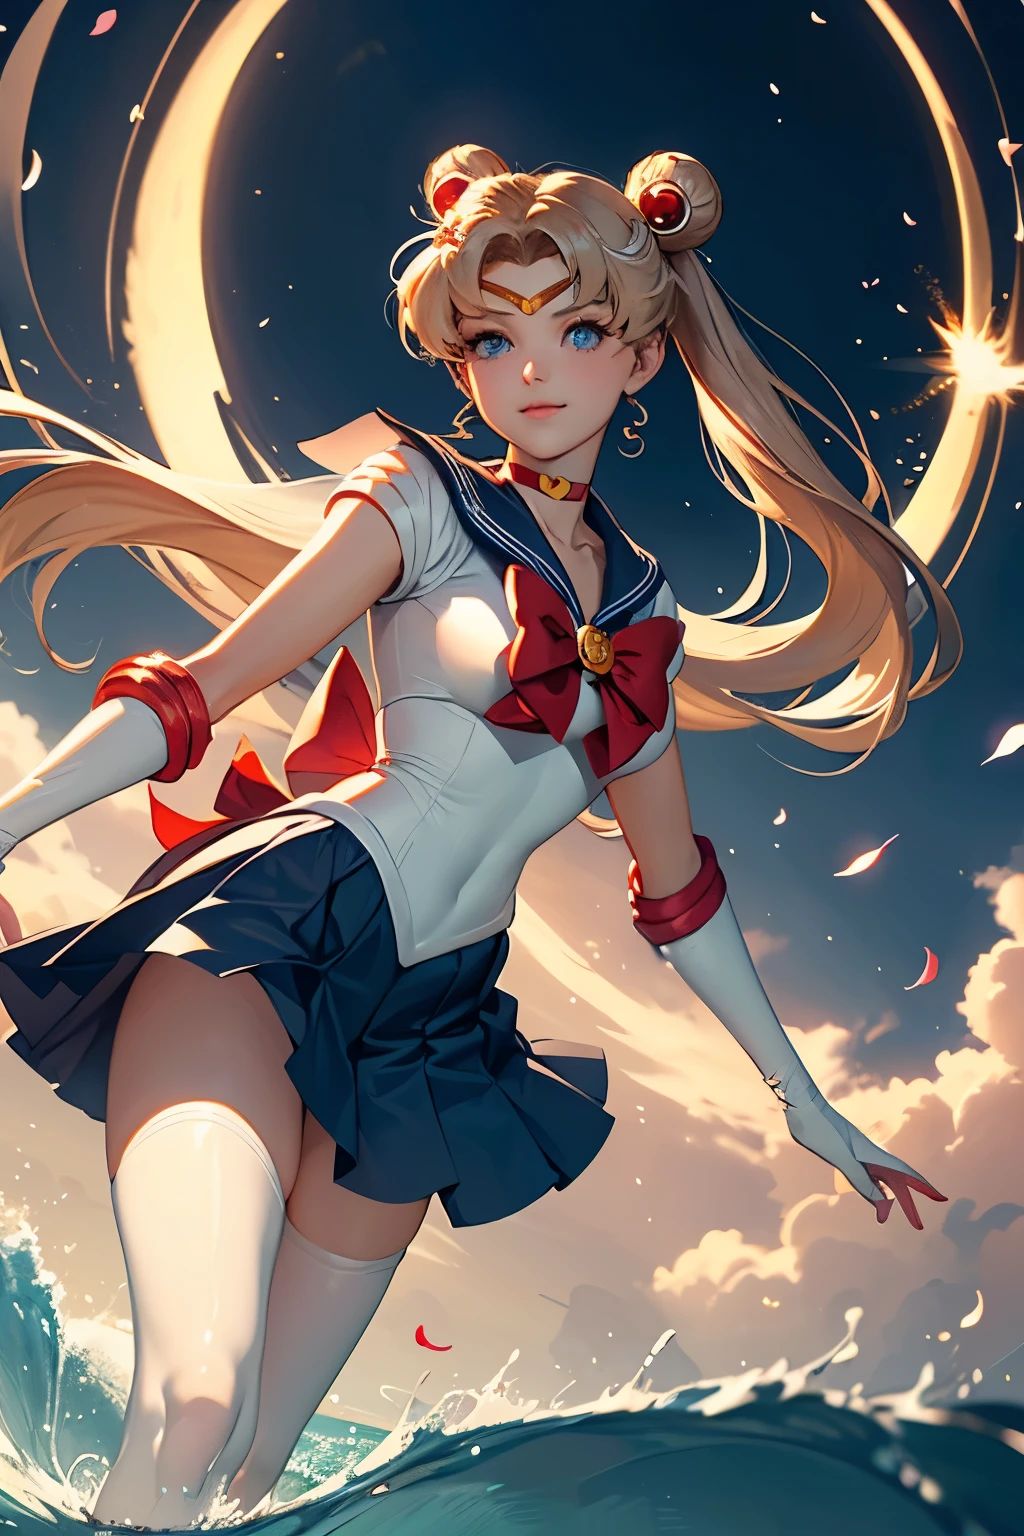 (((sorriso sedutor,perspectiva angular de baixo, vendo da perspectiva meia-calça, vagina cameltoe detalhada,)))Sailor Moon, Usagi, Sozinho, flor,  água, pétalas, ao ar livre, de lado, flores de cerejeira,   mangas compridas, corpo todo,(Obra de arte), melhor qualidade, olhos expressivos, rosto perfeito,((((Sailor Moon)))), Usagi, cabelo loiro, Sozinho, olhos azuis, cabelo longo, saia, blue colarinho de marinheiro, colarinho de marinheiro,  coque duplo, coque de cabelo, luvas, pleated saia, flores de cerejeira, Ondas, twintails, blue saia, pétalas, manga curta, uniforme de marinheiro senshi, serafim, ao ar livre, olhando para o espectador, white camisa, menina mágica, água, sentado, franja separada, camisa, minisaia, nuvem, hair ornament Obra de arte, melhor qualidade, Representação ultraprecisa, Representação ultra-detalhada, arte oficial,alta resolução, QUEBRAR, (Rosto extremamente lindo),(rosto altamente detalhado),lindos olhos detalhados, Cílios detalhados,(pele brilhante), inventar,(rosto corado erótico), QUEBRAR, corpo todo, ((corpo magro tonificado)),Bunda linda, Nádegas tonificadas, lindas pernas, QUEBRAR, (((belas mãos, mãos perfeitas))), ((peito muito bonito)), QUEBRAR, olhando para o espectador, (((plano de fundo que corresponda à situação e às cores do personagem)))